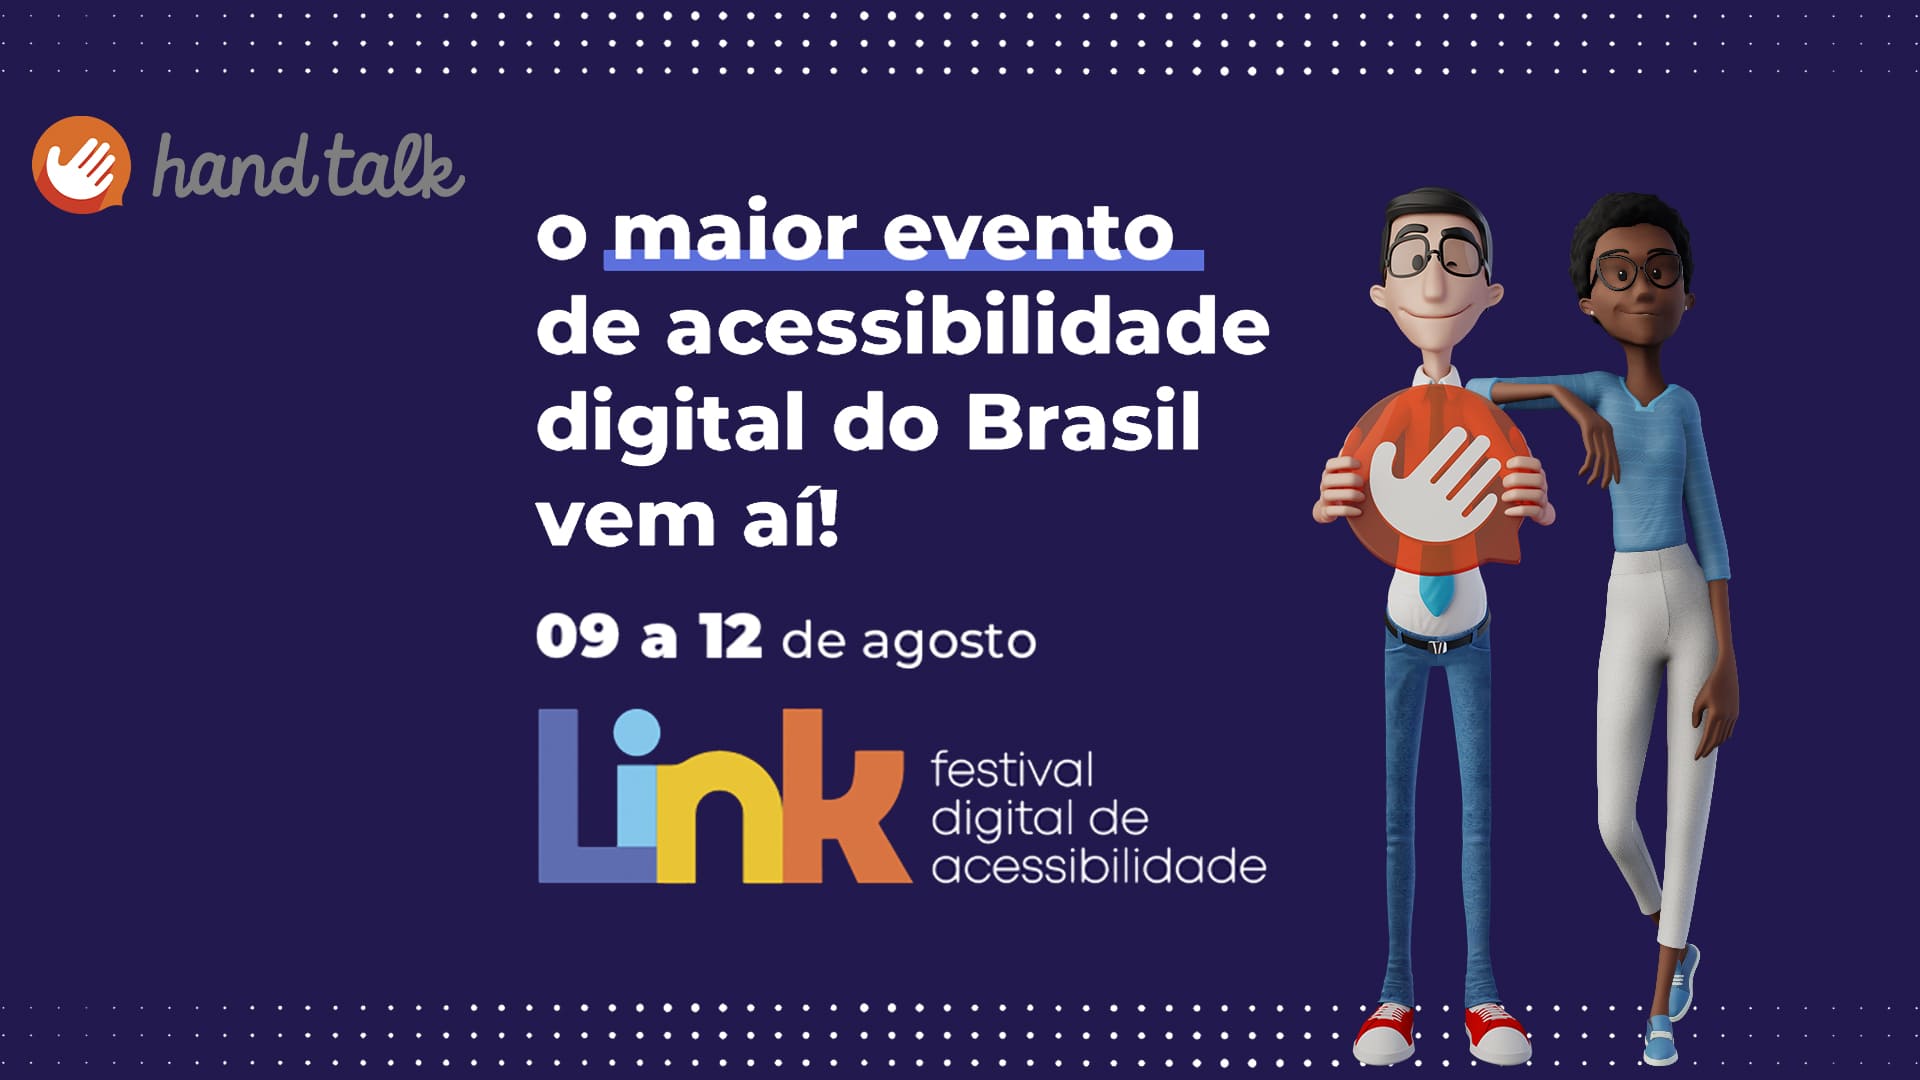 Banner de divulgação do evento, com logos, textos e avatares, descritos na legenda, e ilustrando o texto “Hand Talk anuncia o Link 2021: Festival Digital de Acessibilidade”.